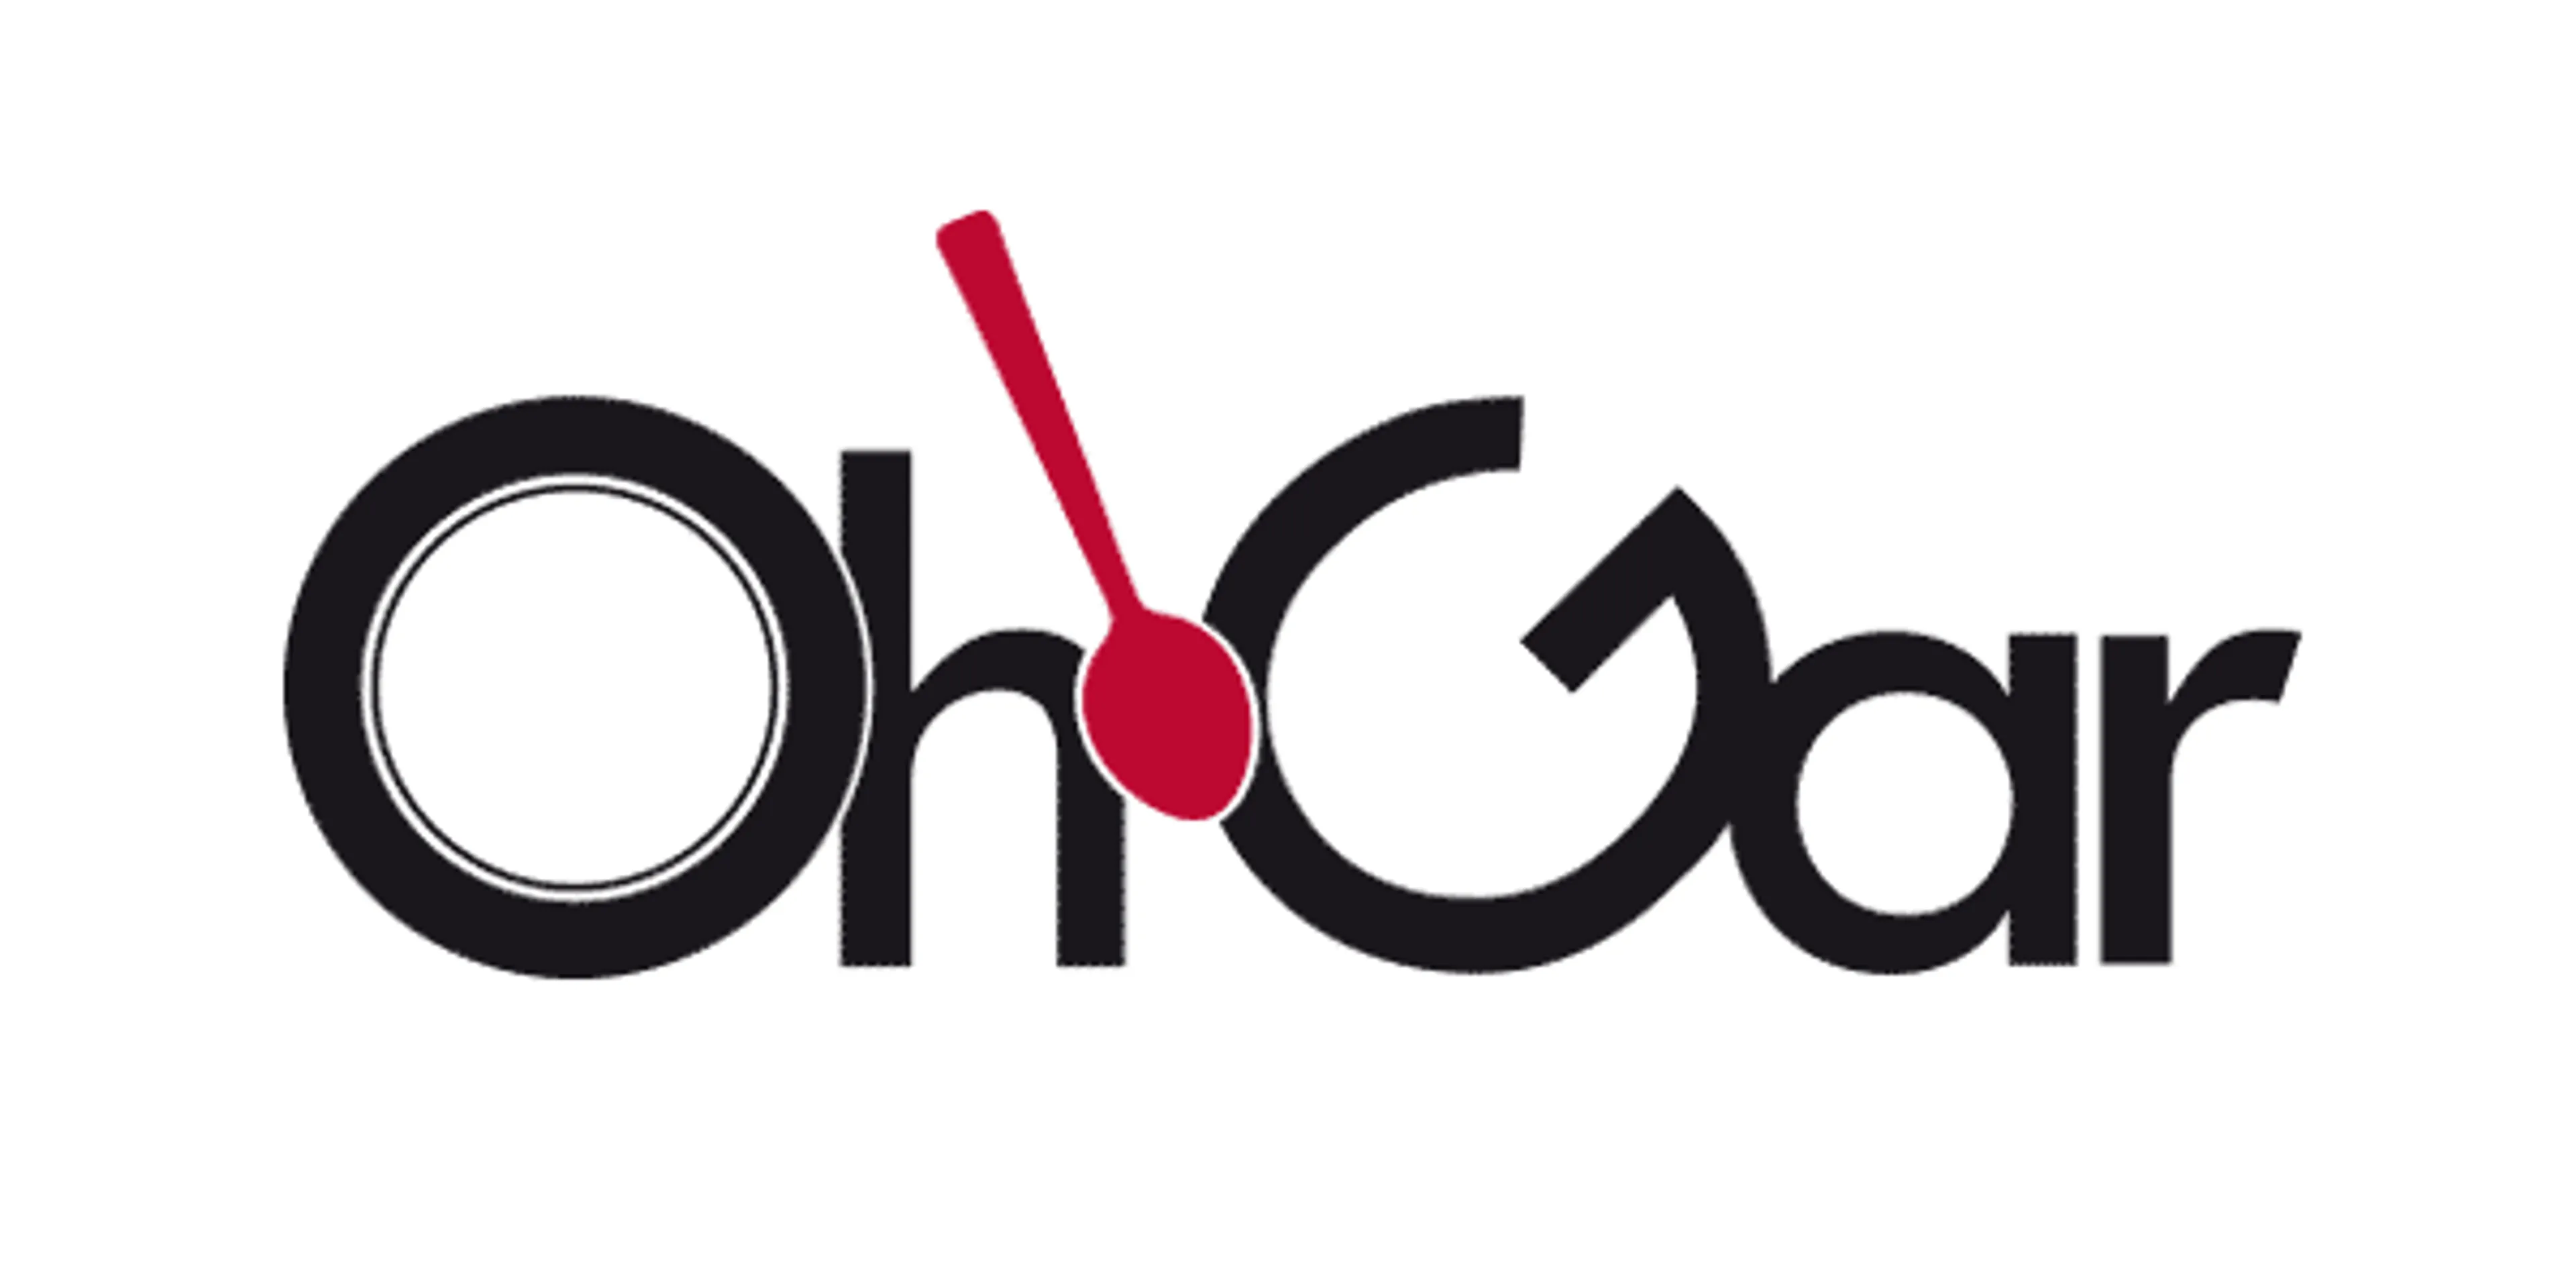 OHGAR logo